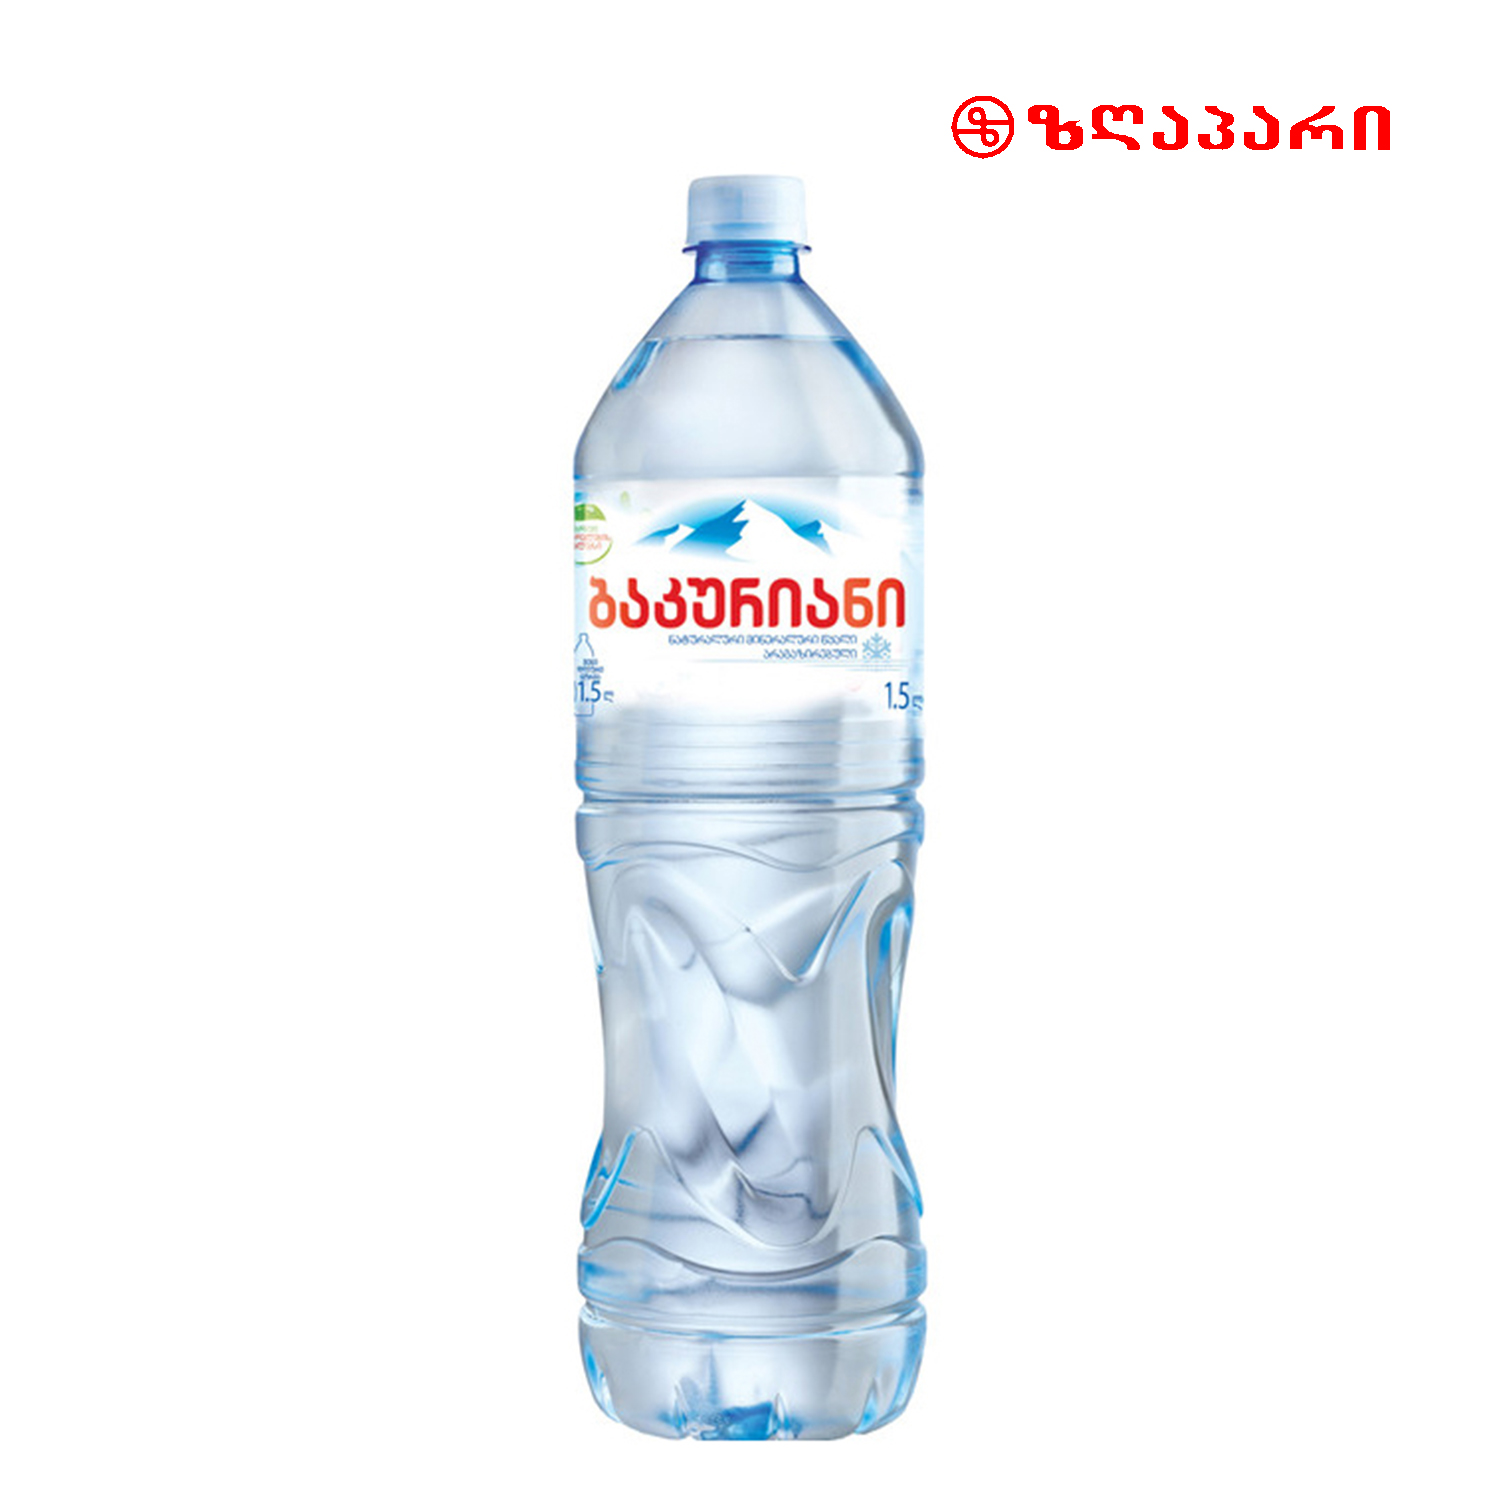 Вода минеральная 0.5 л. Bakuriani вода. Бакуриани вода минеральная. Bakuriani 0.5 вода. Bakuriani вода Святой источник.